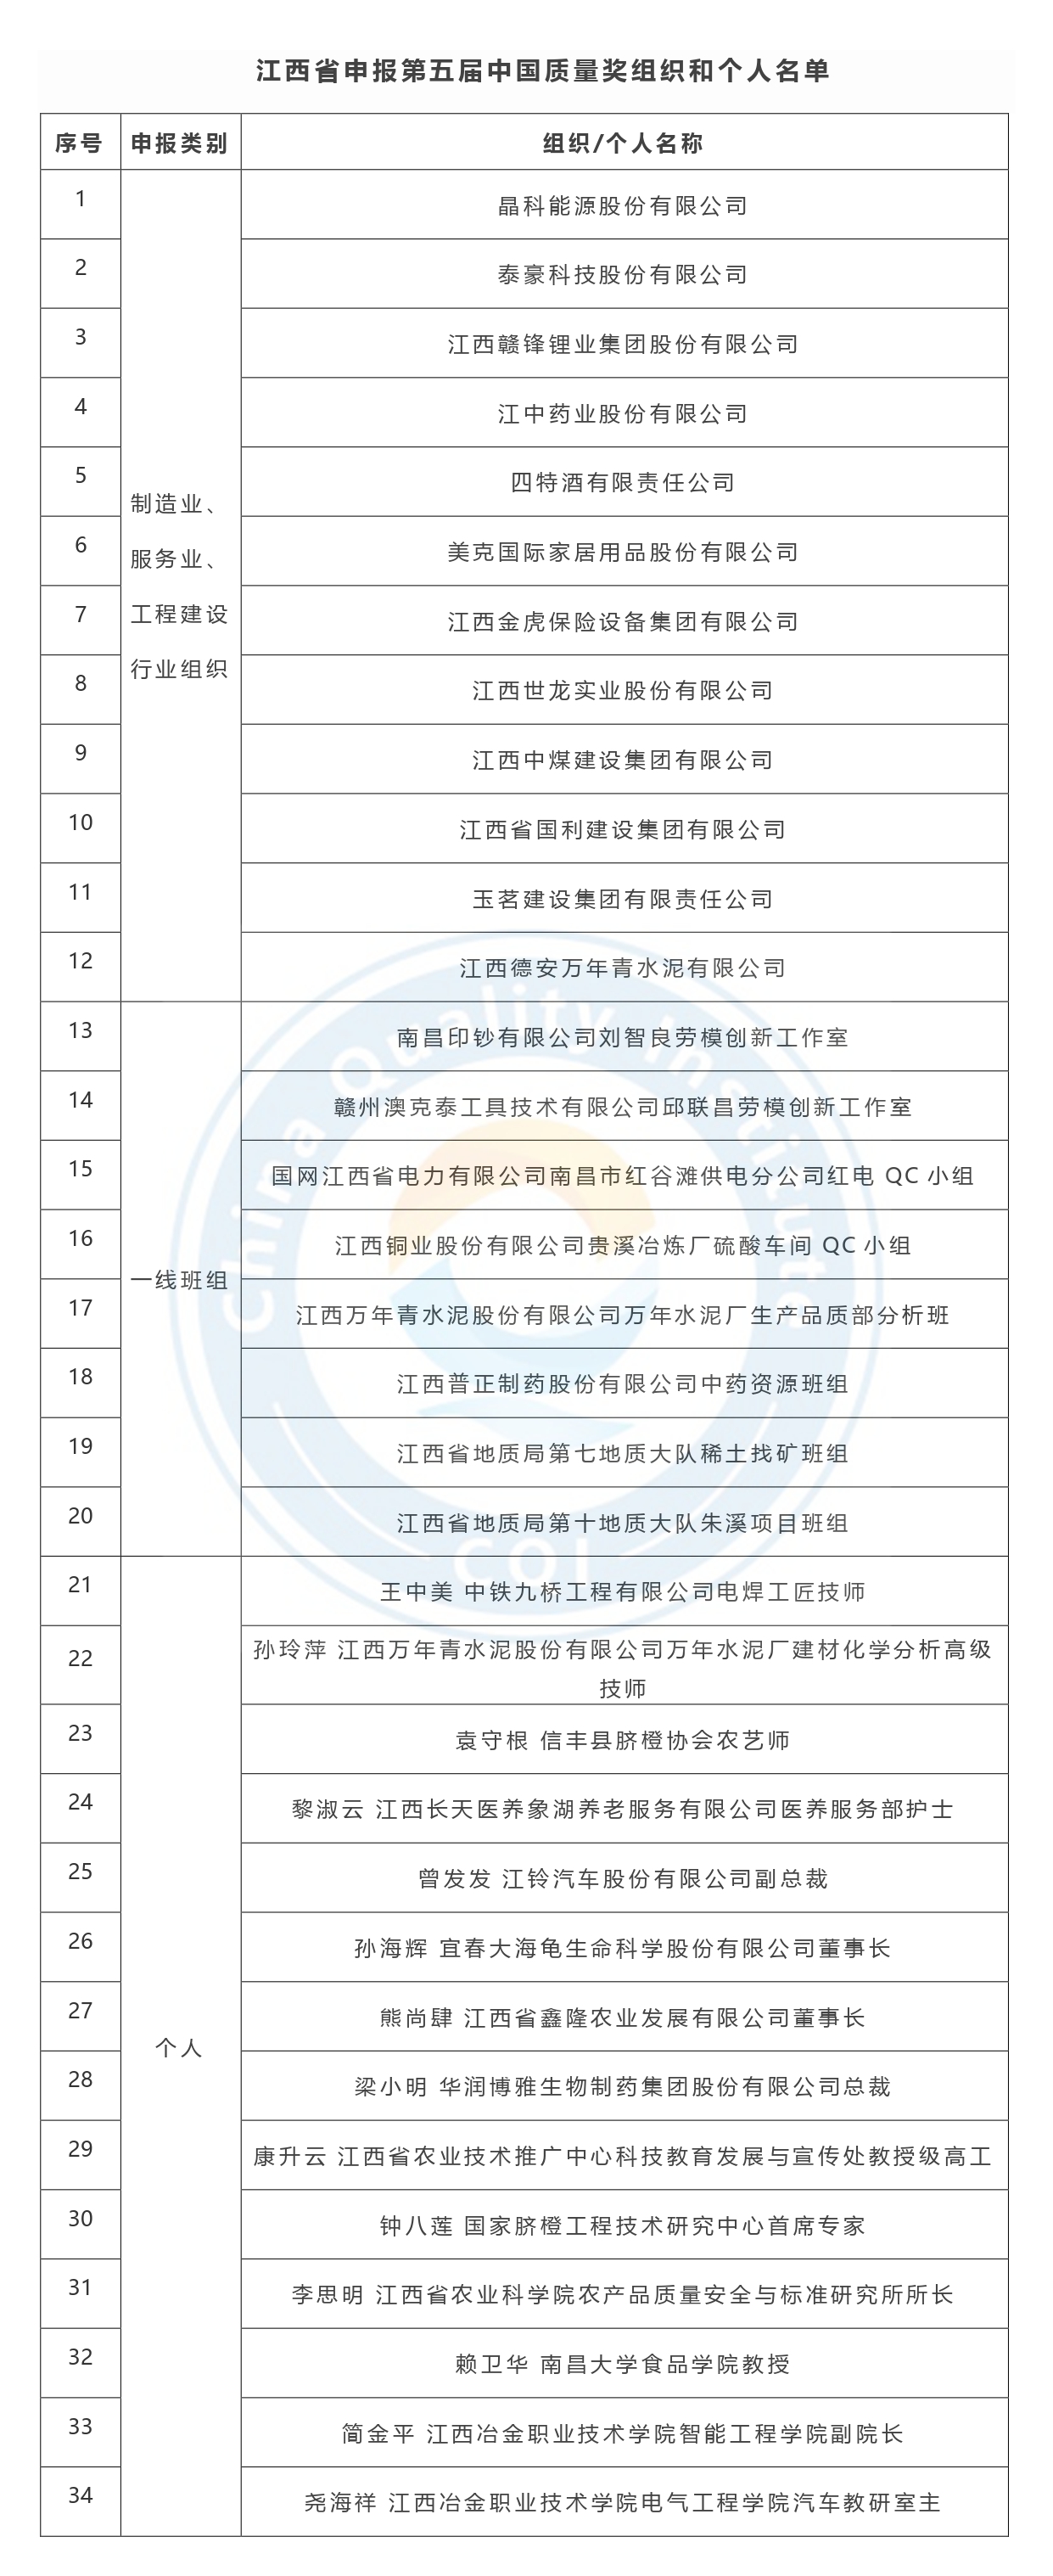 第五届中国质量奖申报名单公示-江西省.jpg